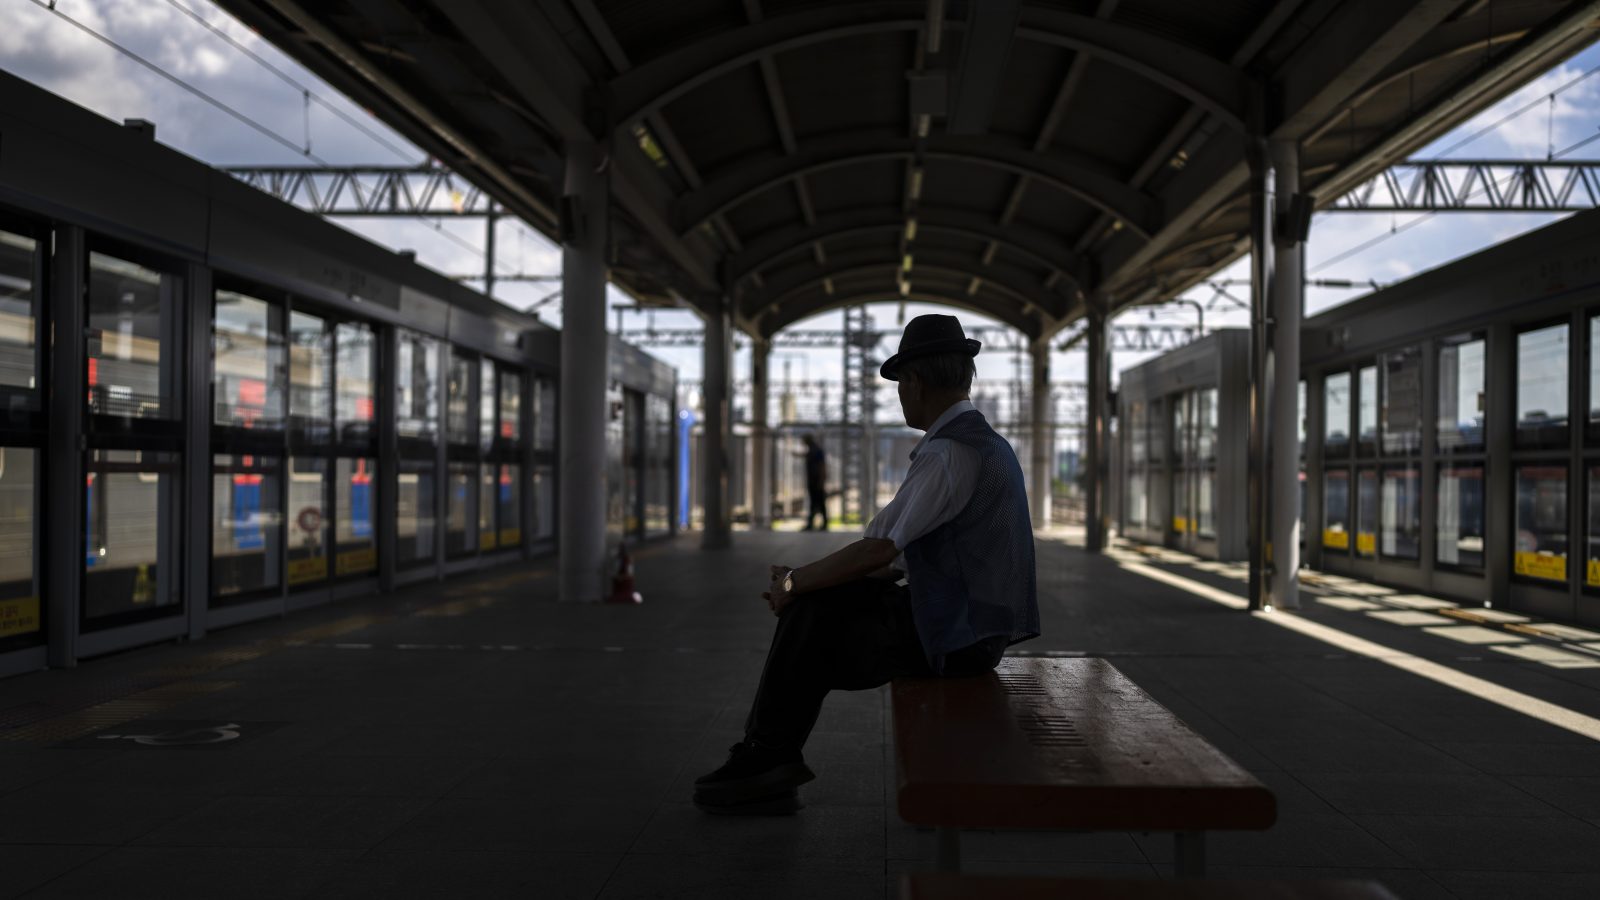 地下鉄の「タダ乗り」で暇をつぶす韓国の高齢者─老後の貧困と孤独のなかで | 超高齢化社会のオアシス